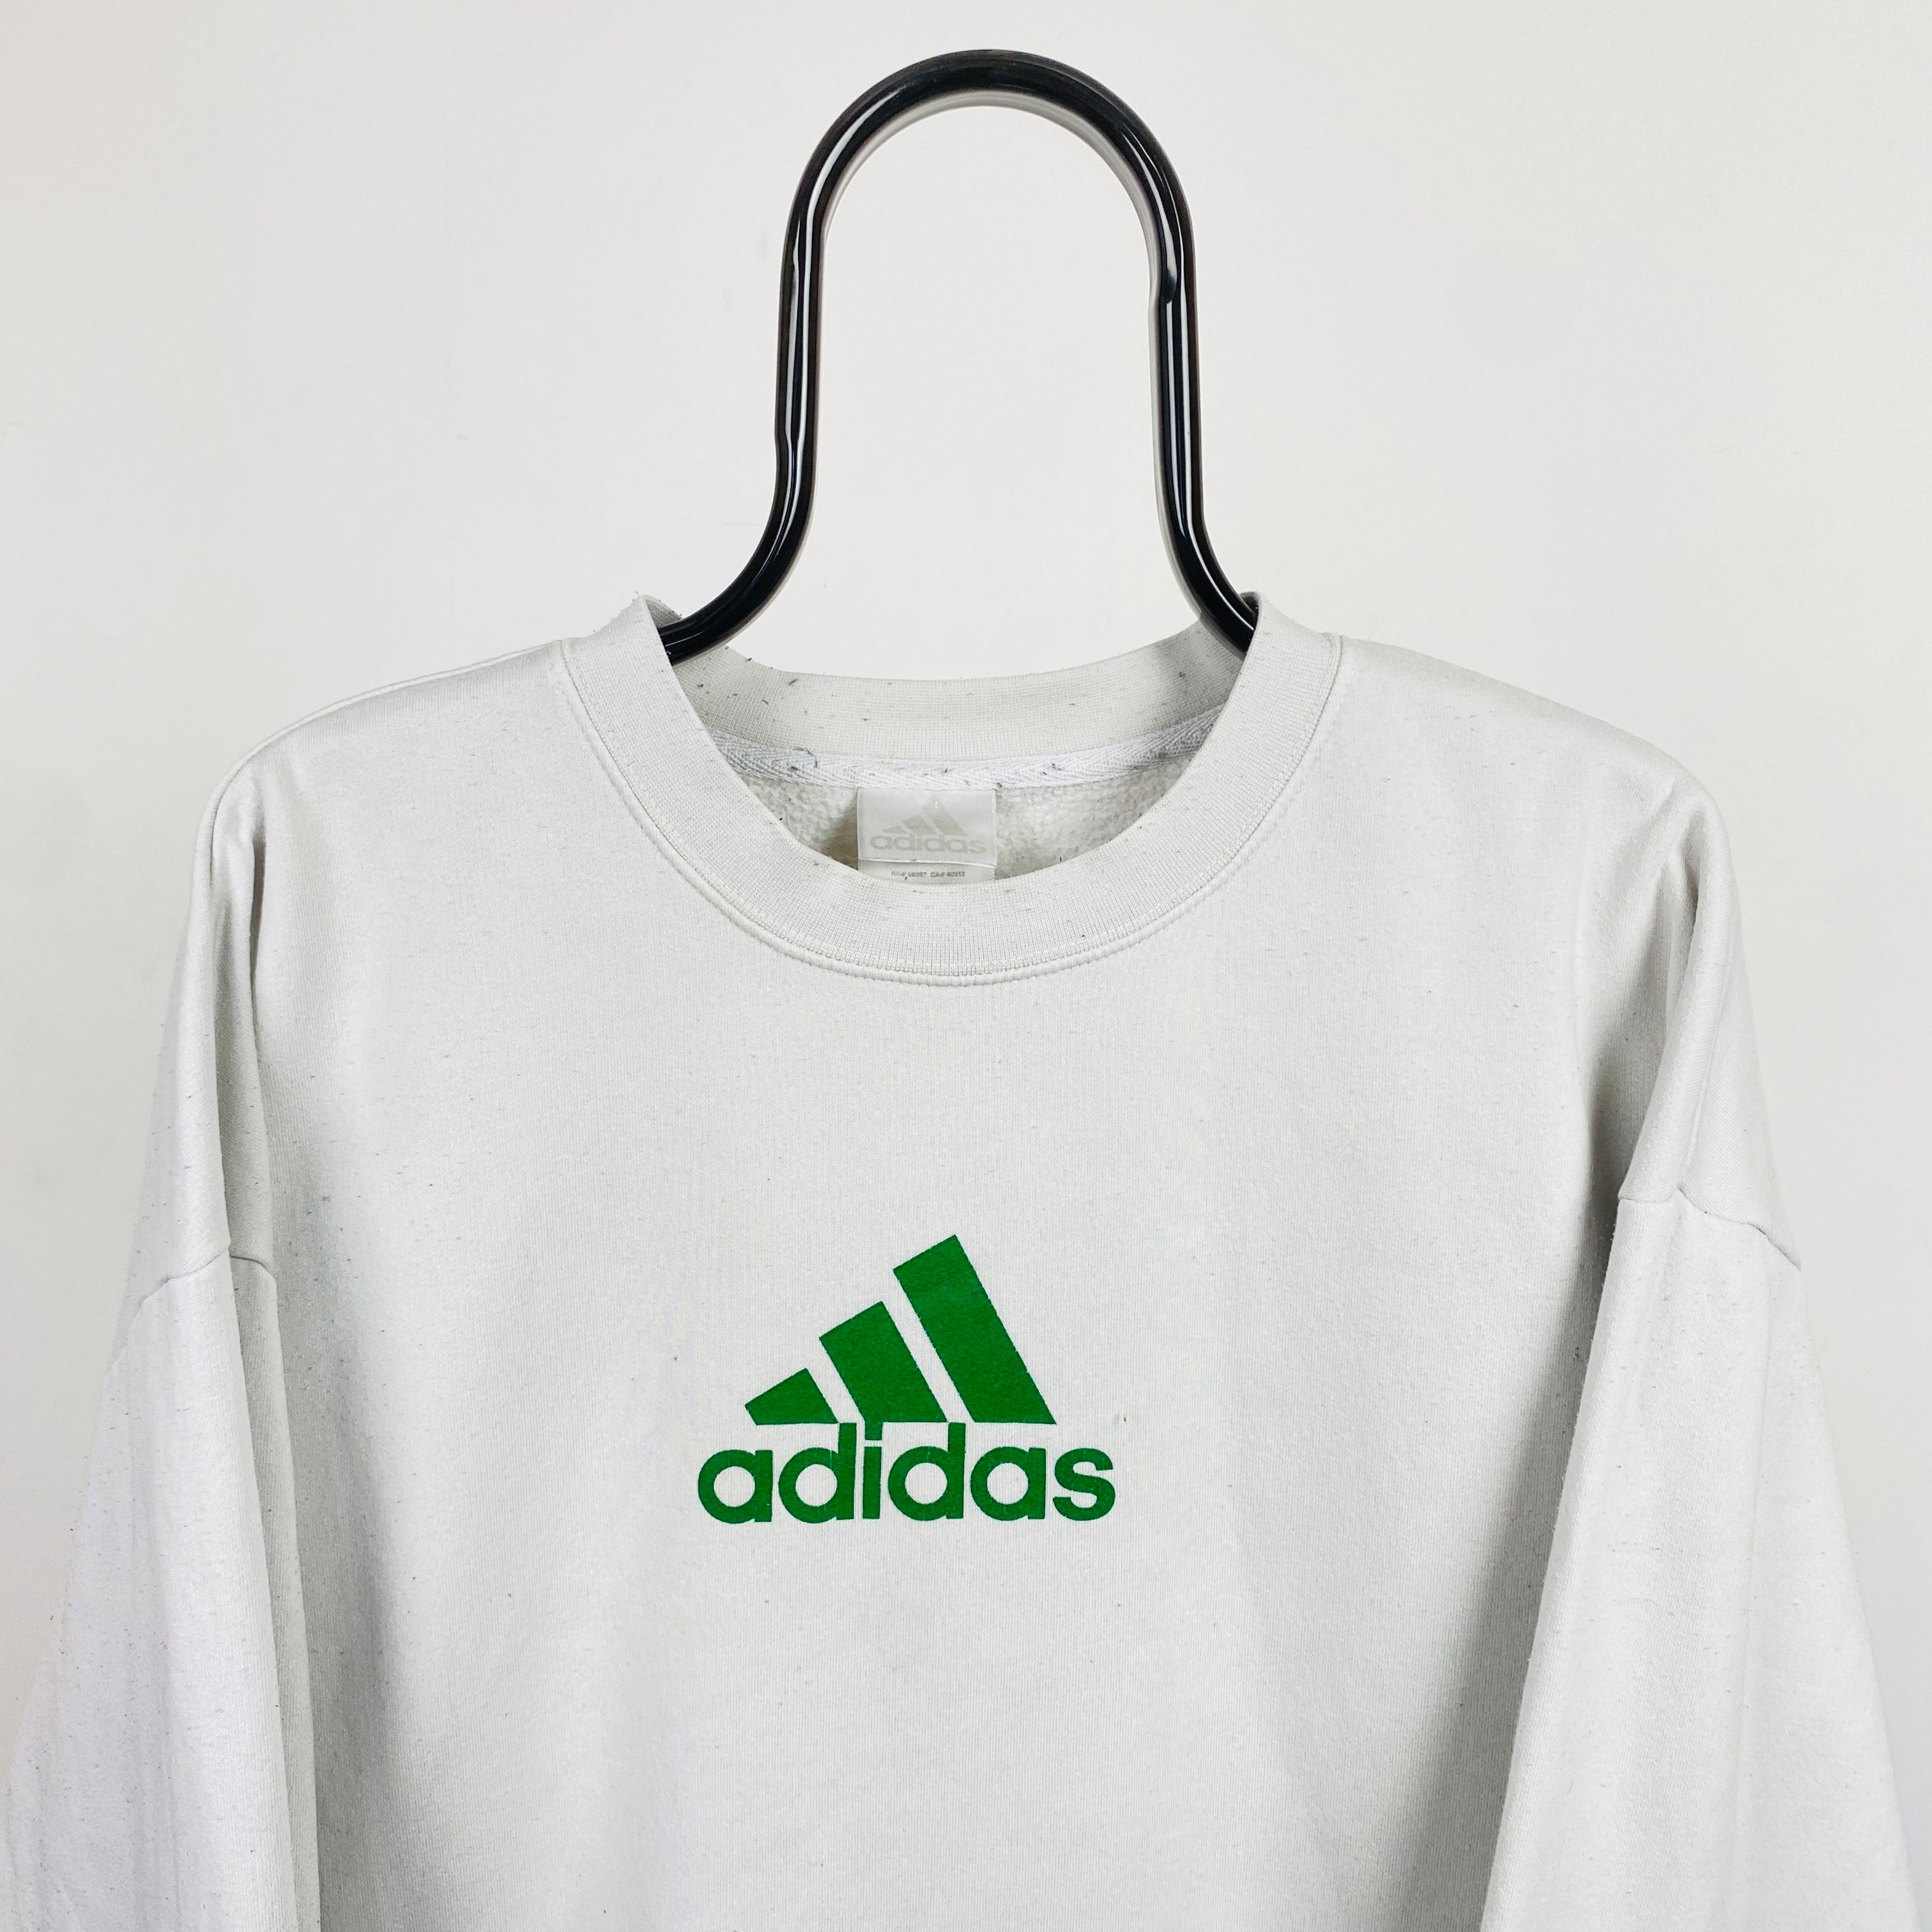 90s Adidas Sweatshirt White Large